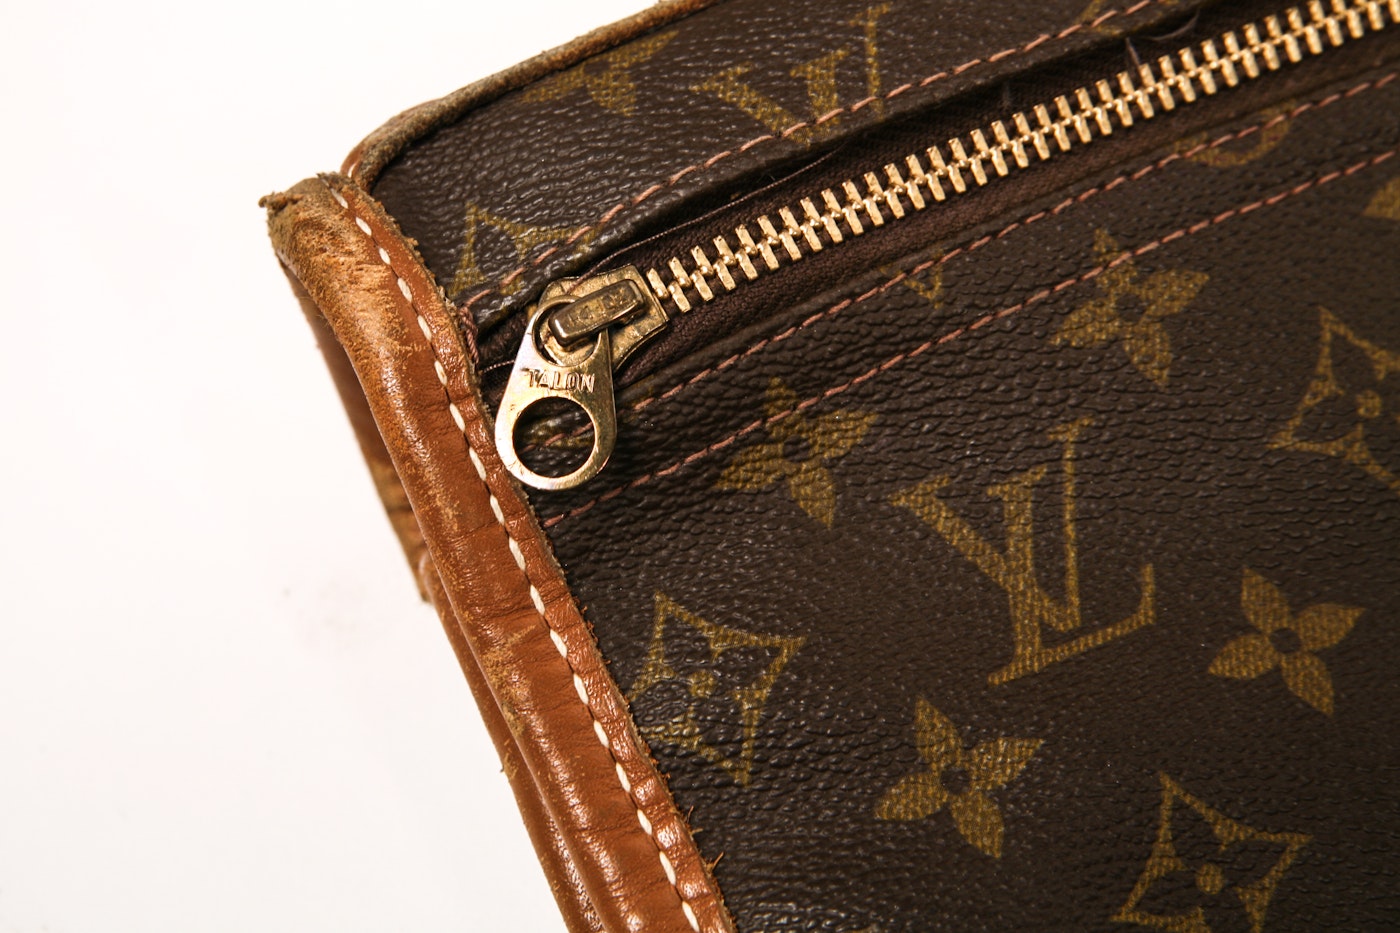 Louis Vuitton Vintage 1970’s Trifold Monogram Shoulder Bag